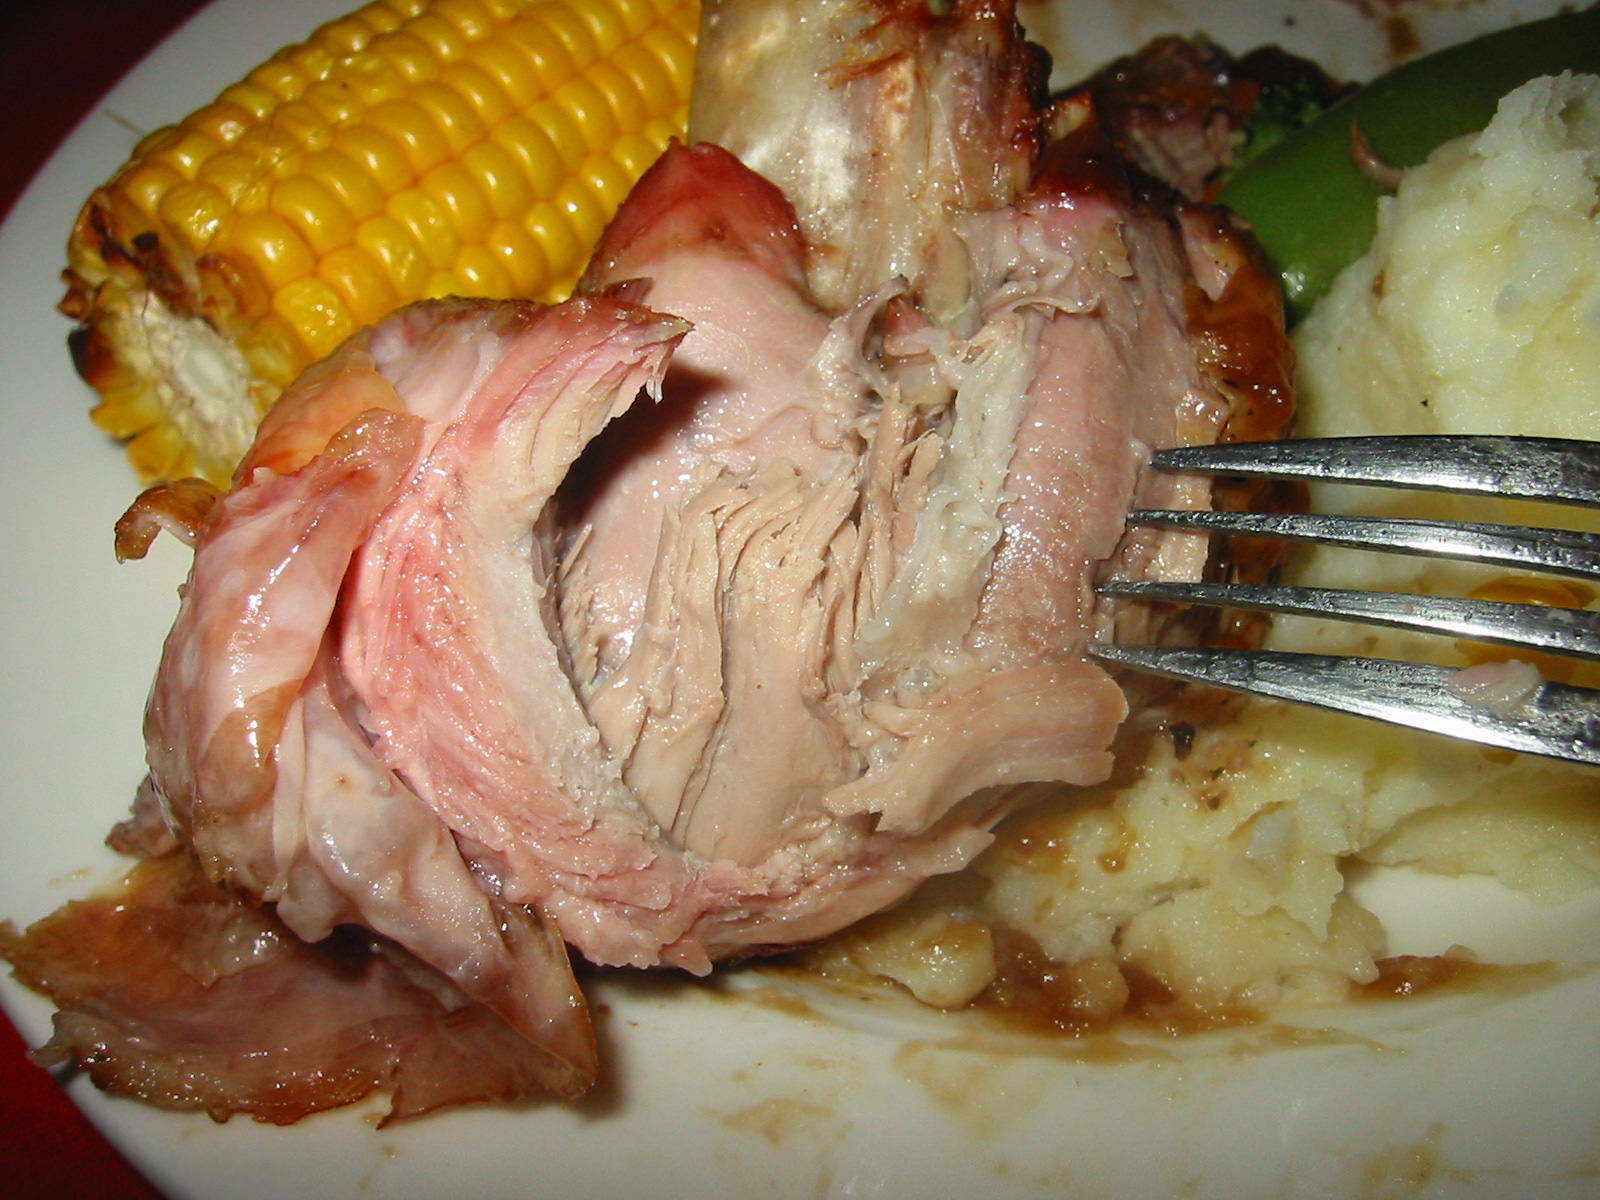 Turkey looks like pork!